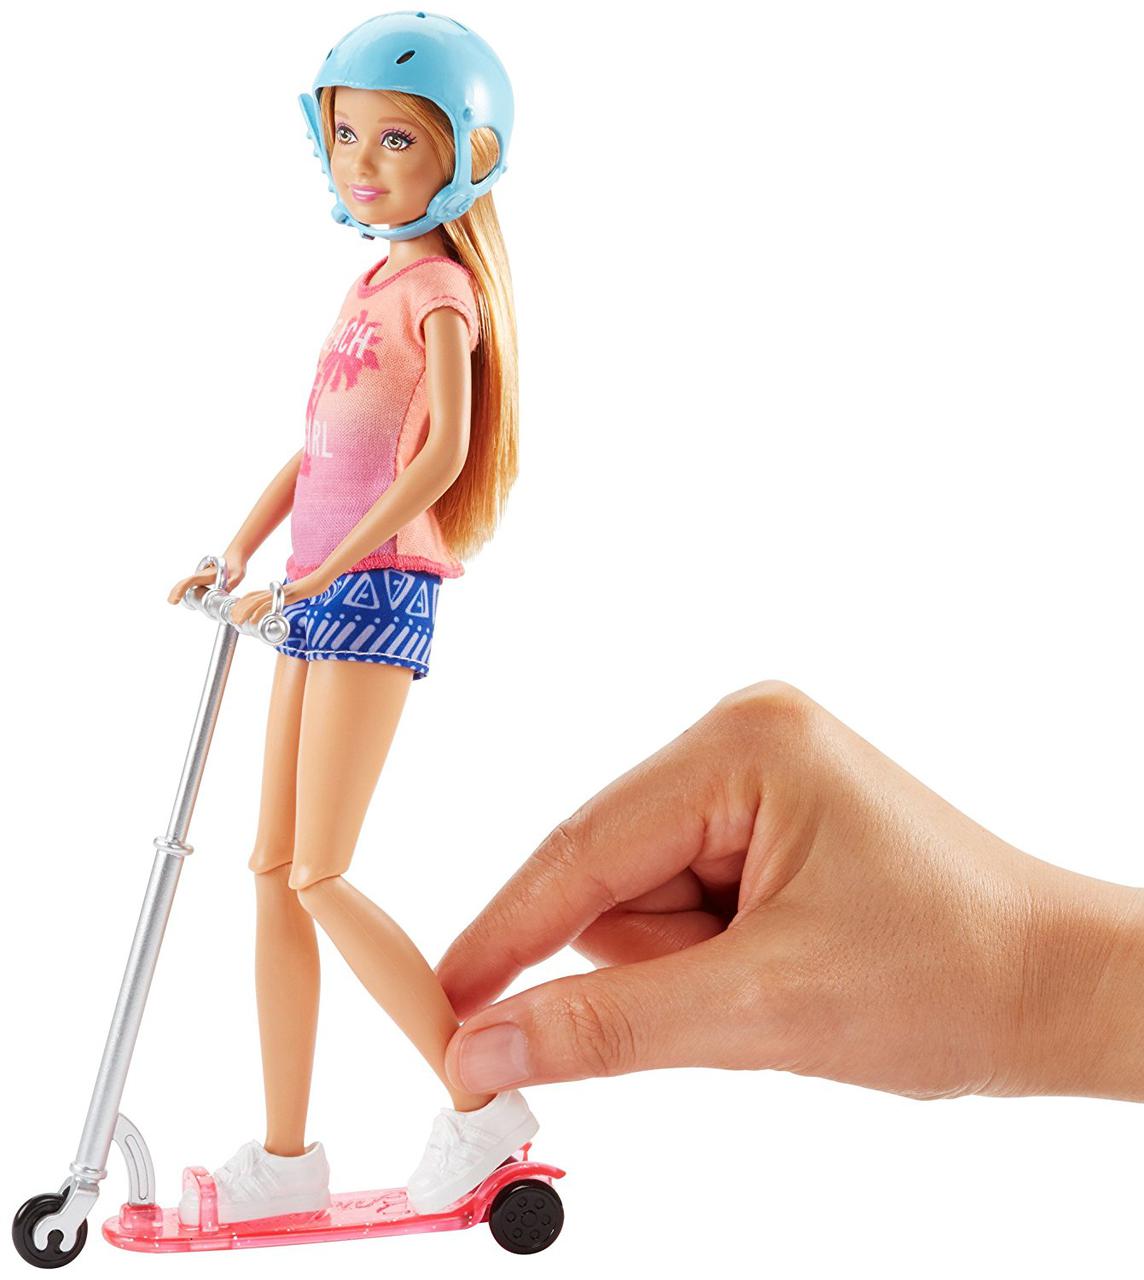 Кукла Стейси на скутере серии Барби и ее сестры купить недорого в Украине,  Киеве, Днепре. Интернет-магазин Dreamtopia - 566427108